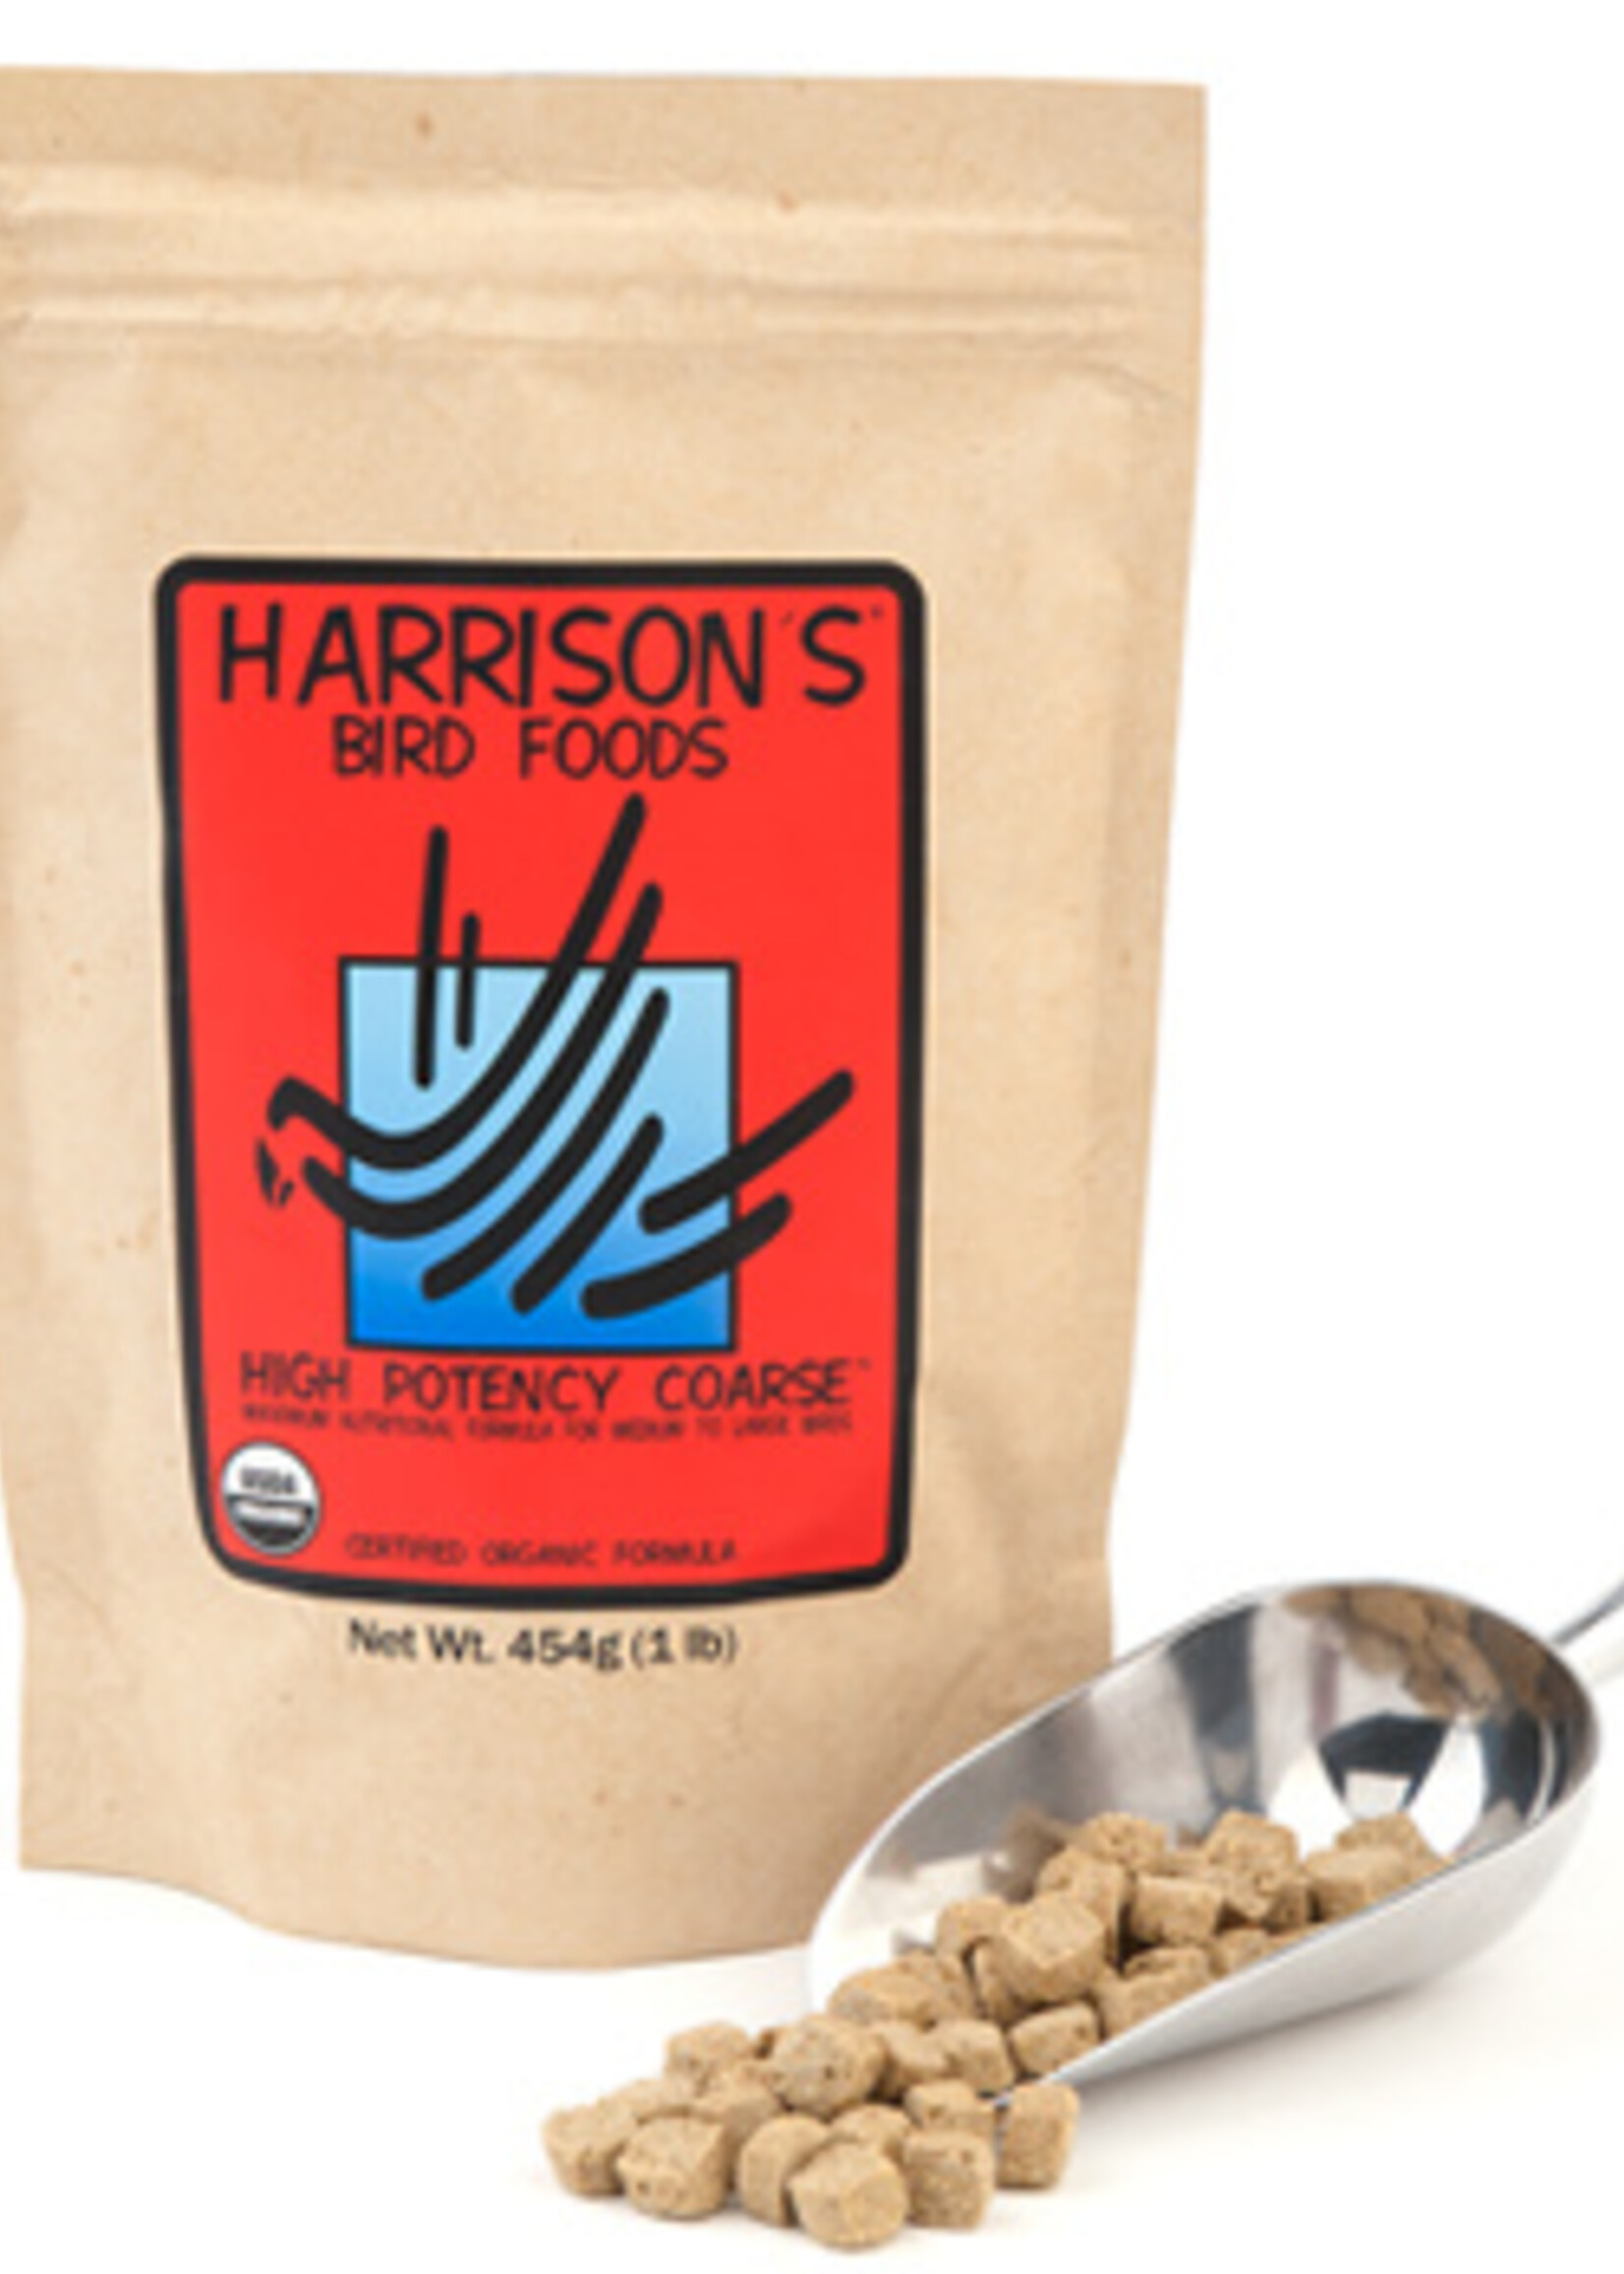 Harrison's Harrison’s High Potency Coarse Bird Food